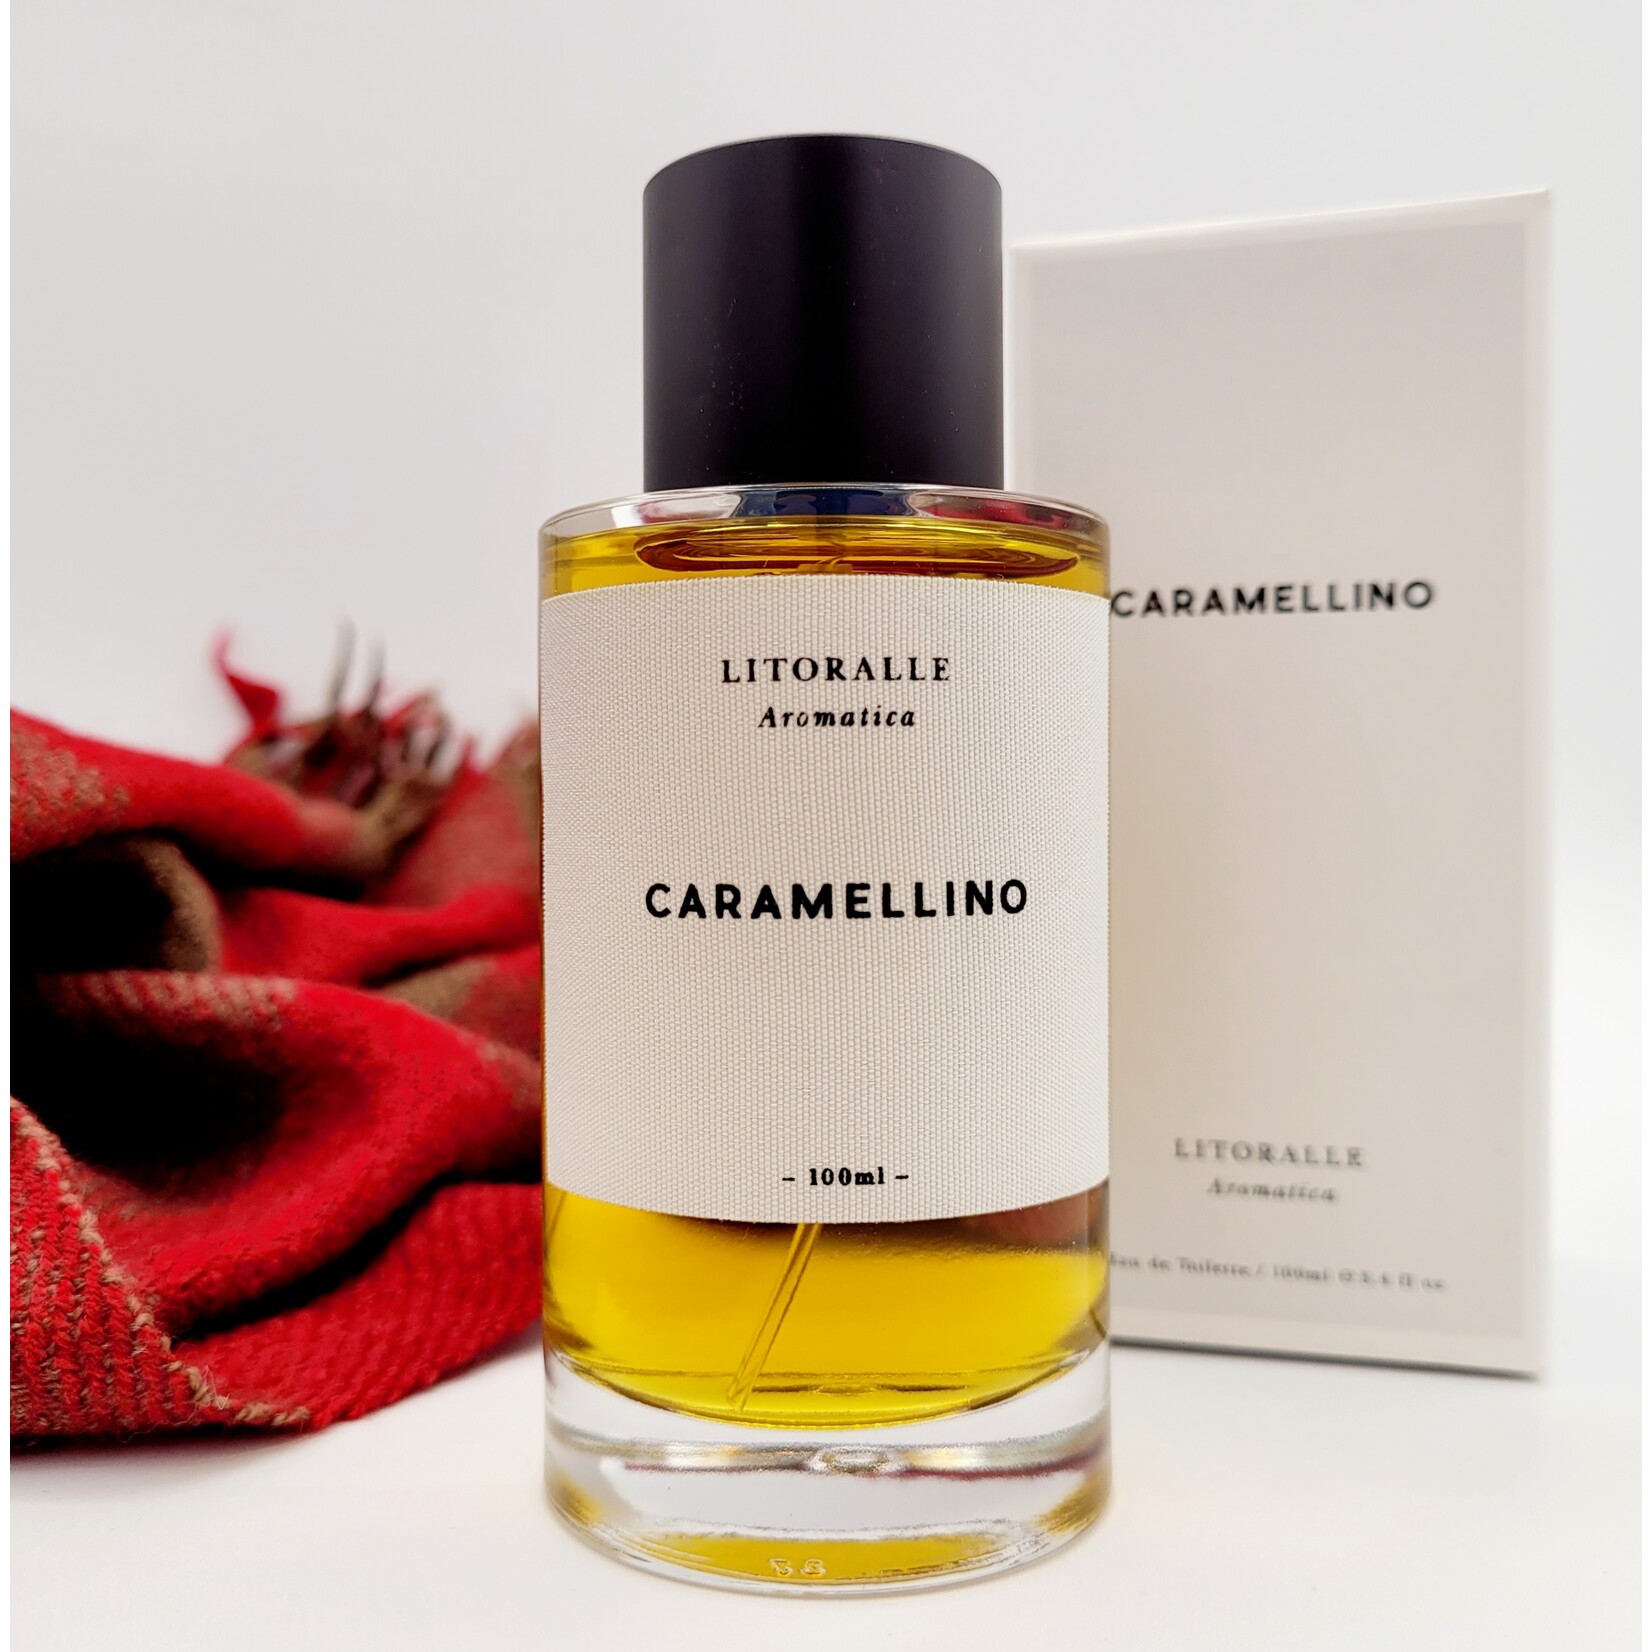 Litoralle Litoralle Aromatica: Caramellino - Eau de Toilette (100ml)